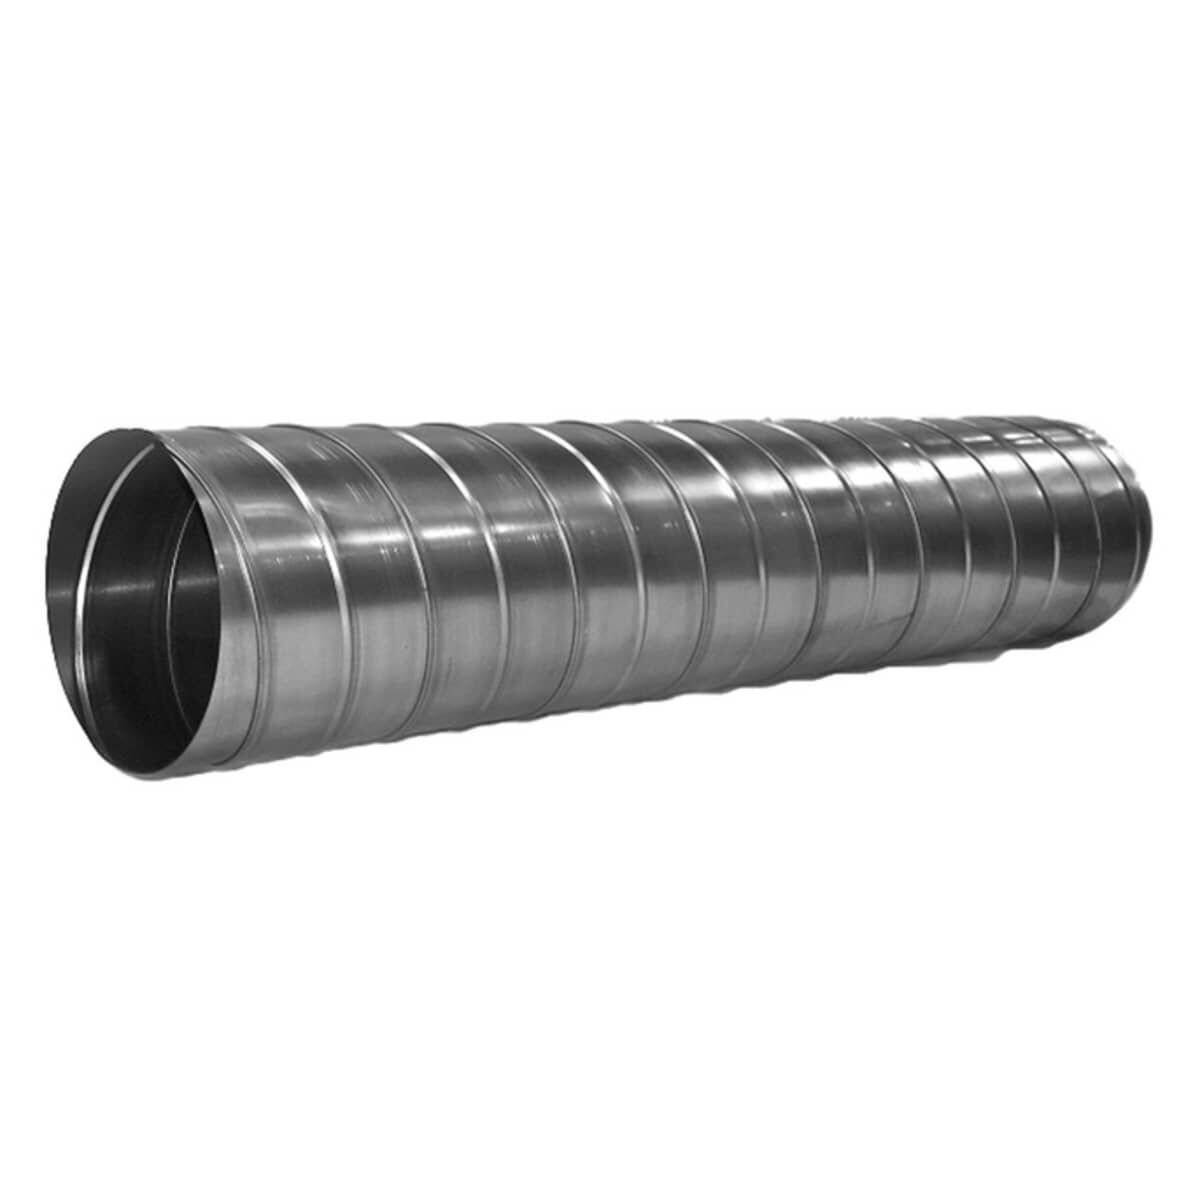 Воздуховод круглый D= 710 Материал: оцинкованная сталь Тип: вентиляционный